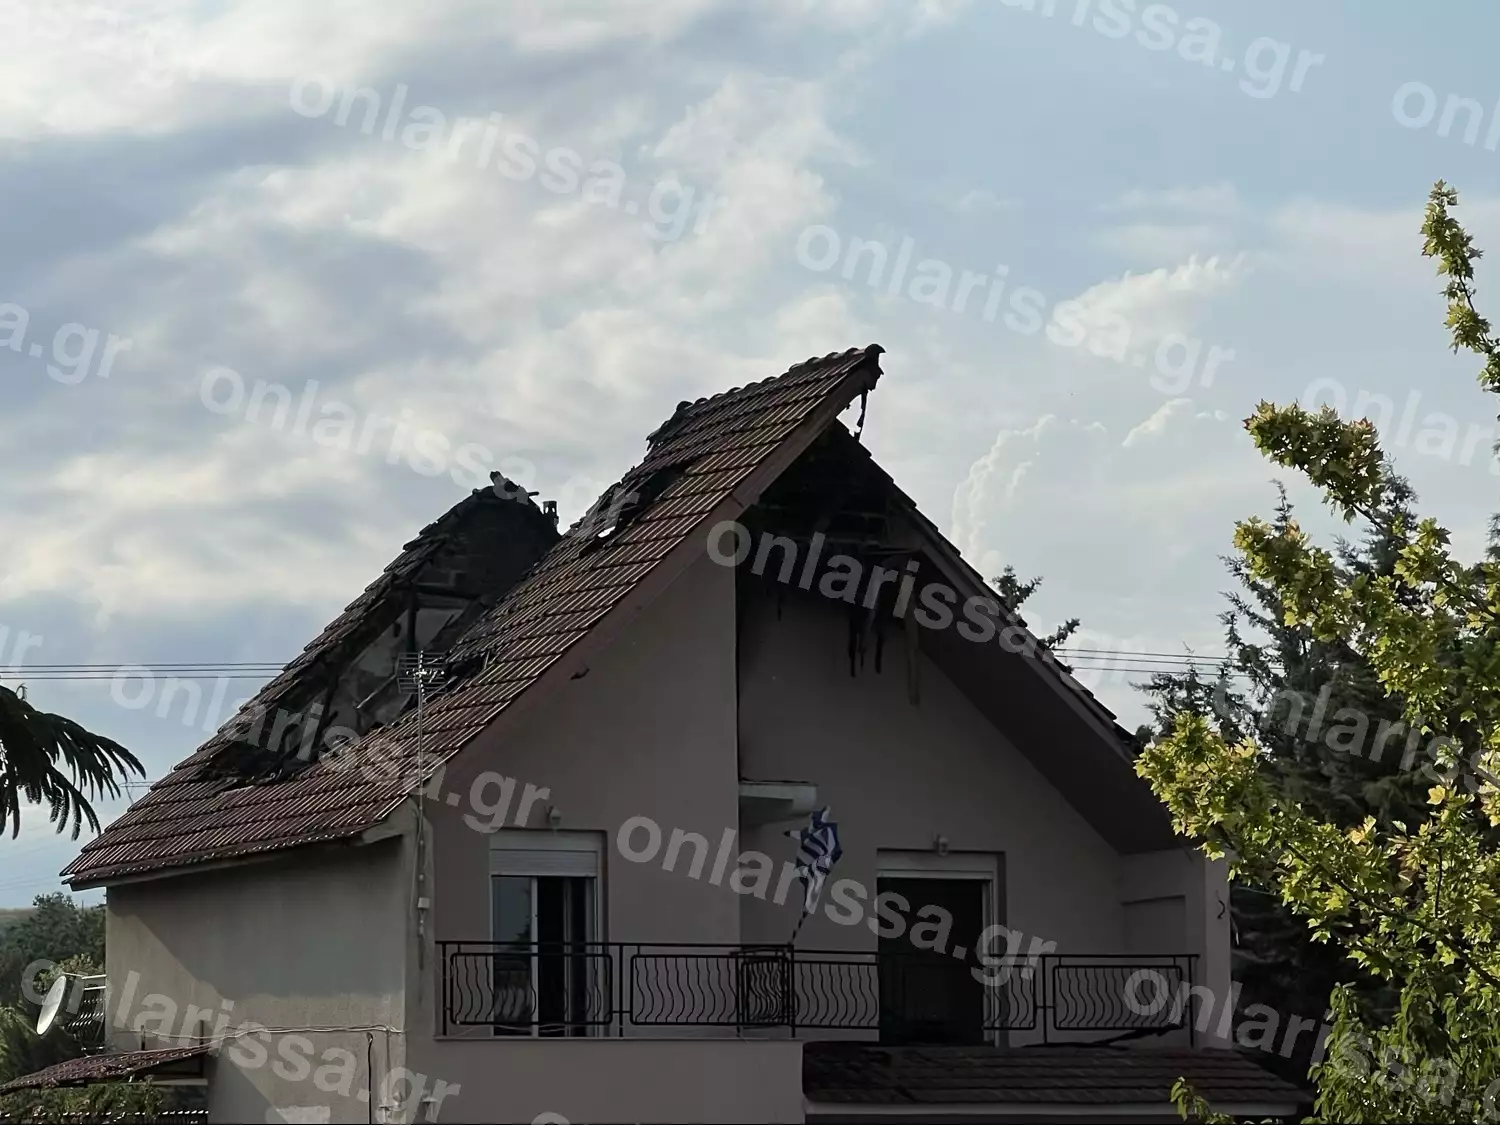 Λάρισα: Κεραυνός χτύπησε κατοικημένο σπίτι – Μεγάλες καταστροφές